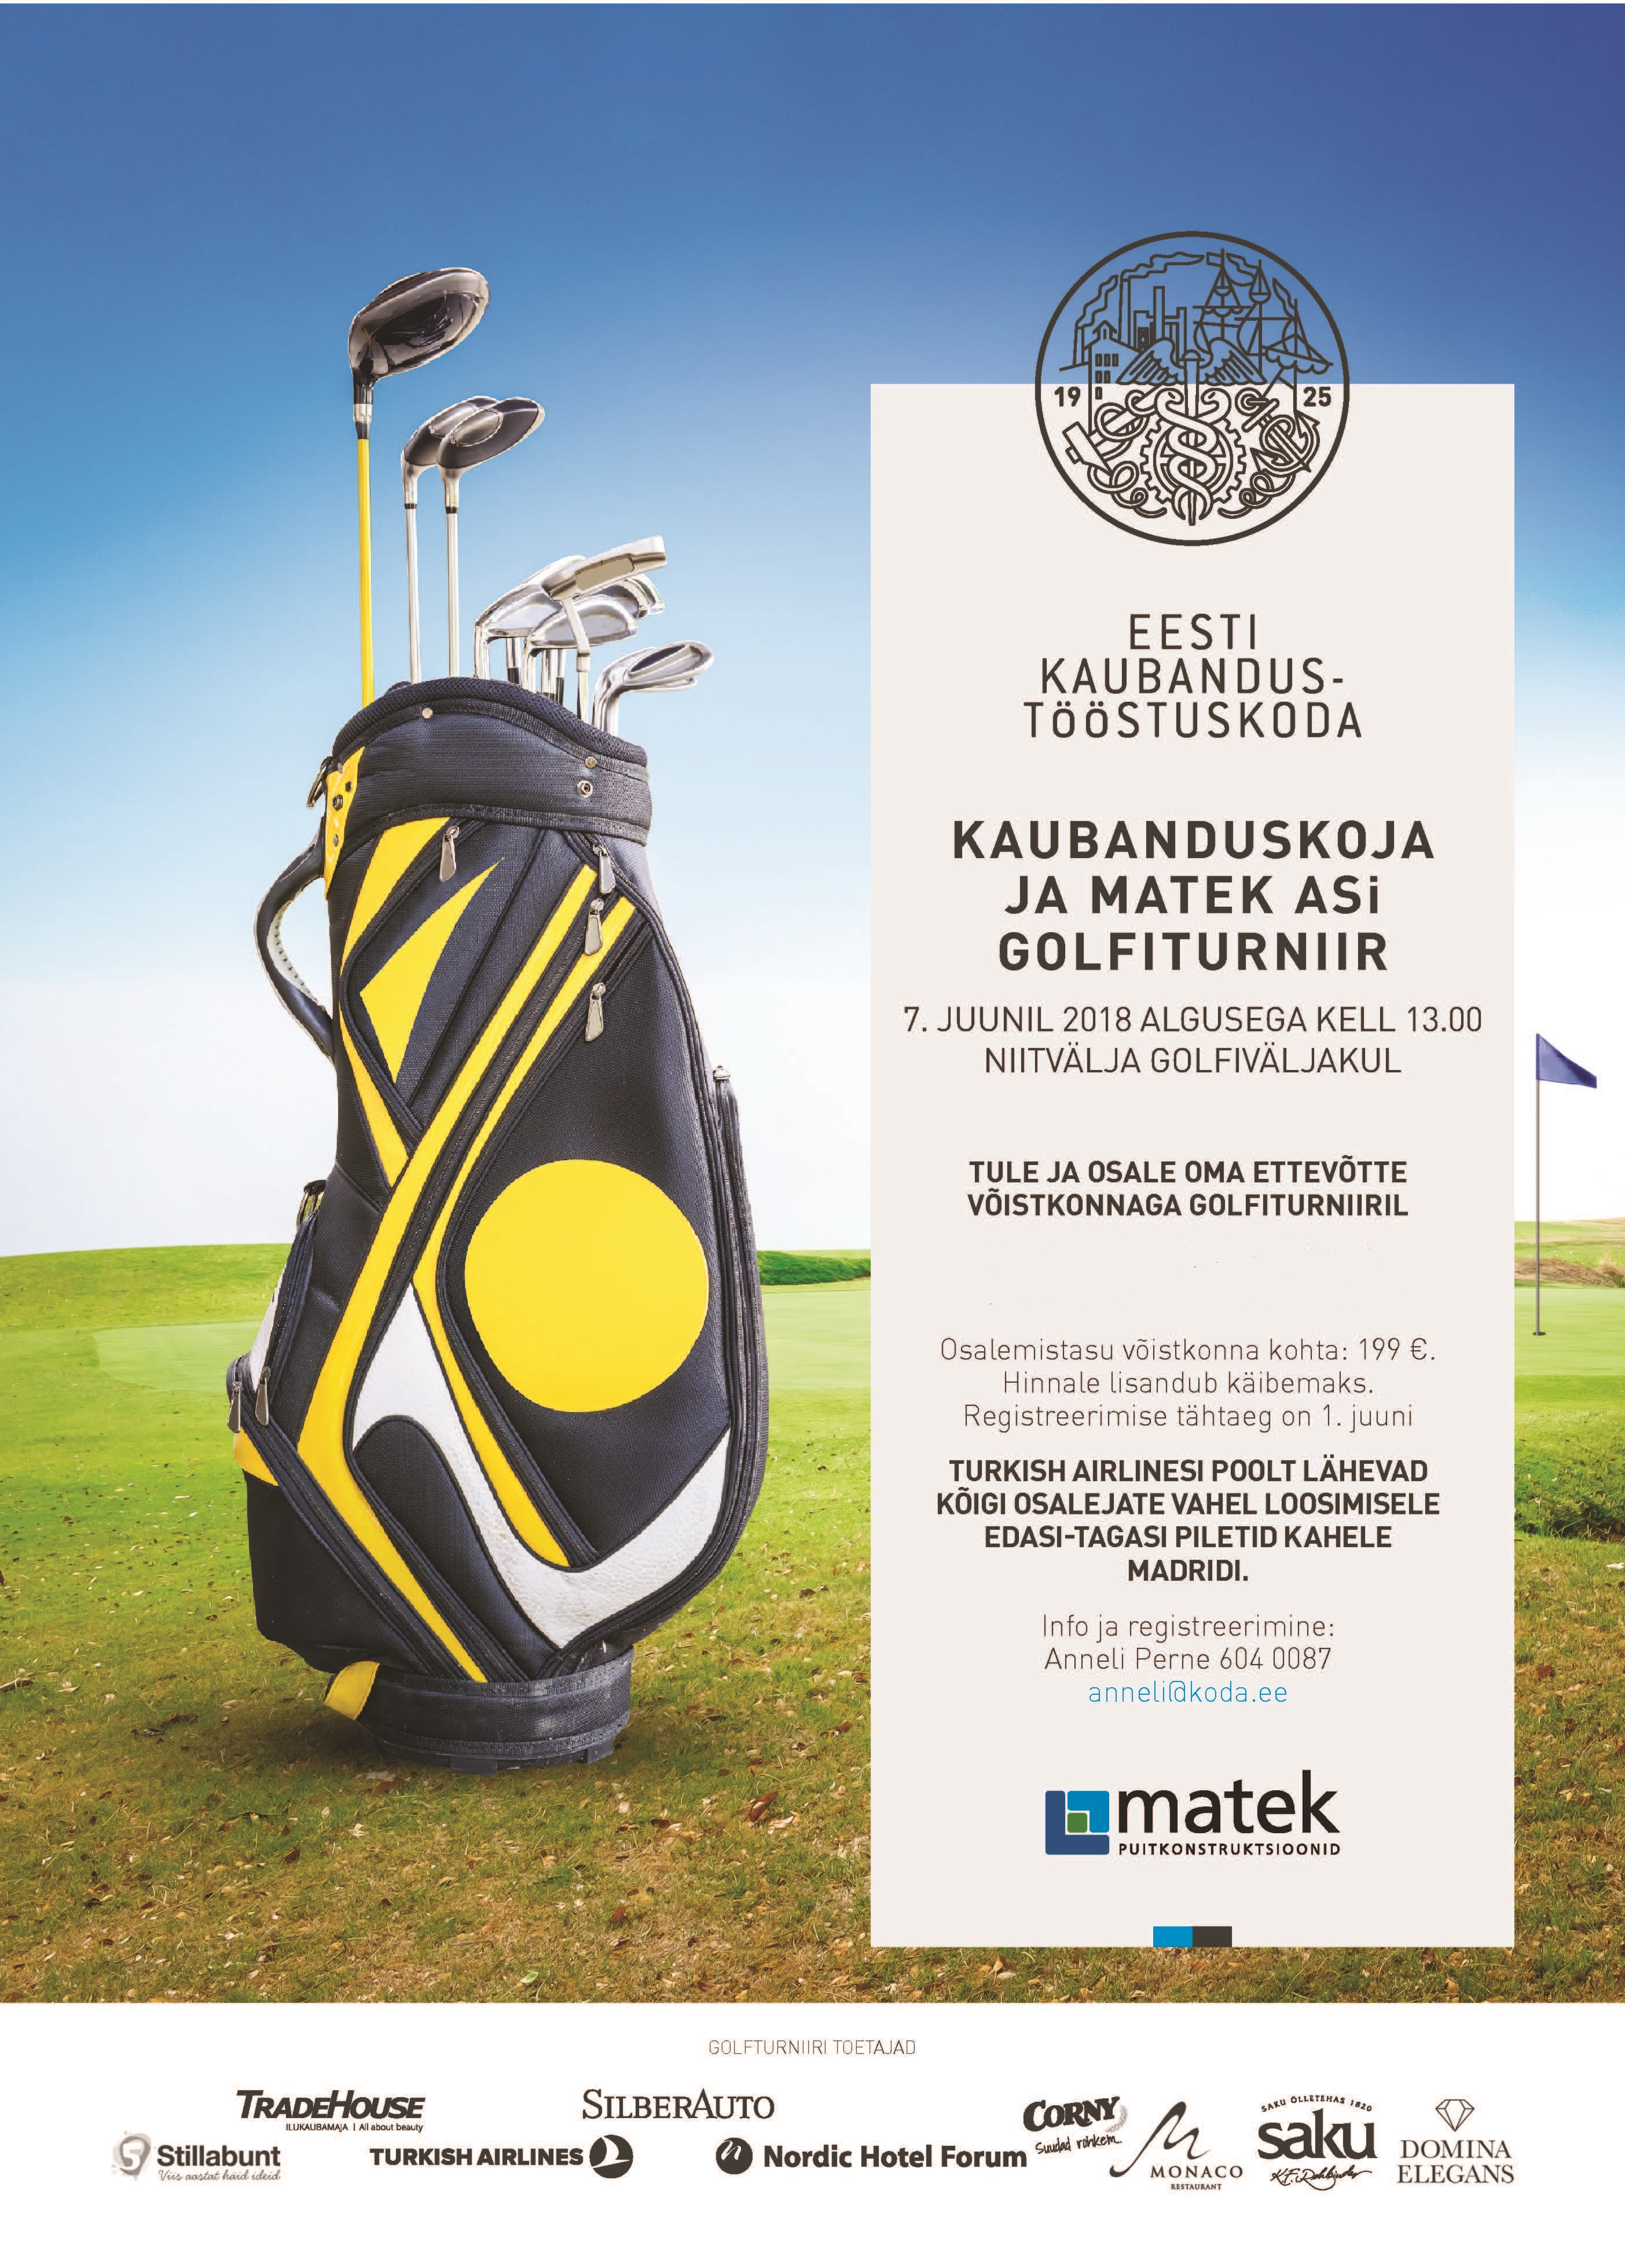 Tule osale oma ettevõtte võistkonnaga golfiturniiril!